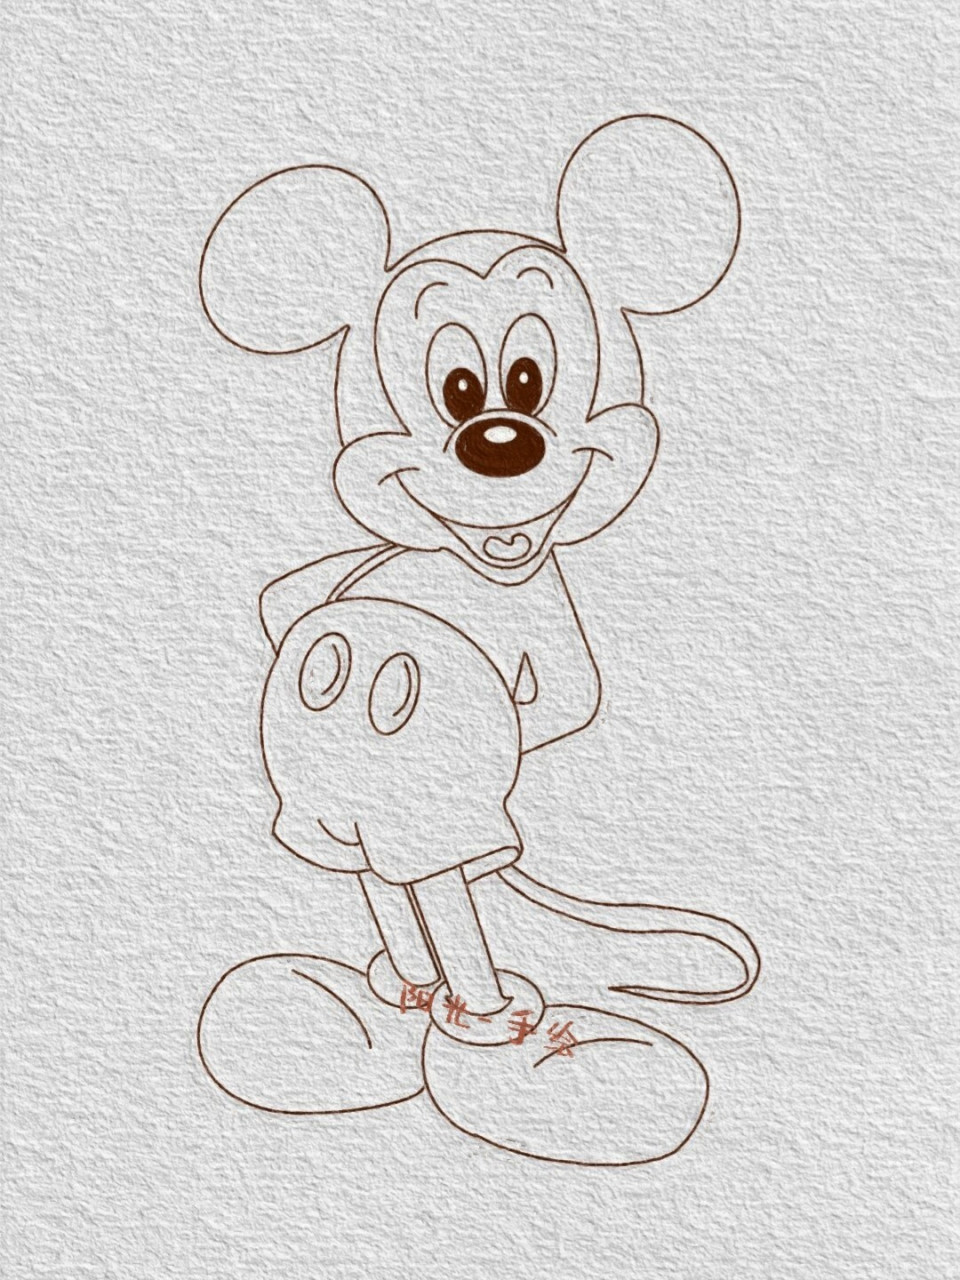 米老鼠怎么画 简笔画图片